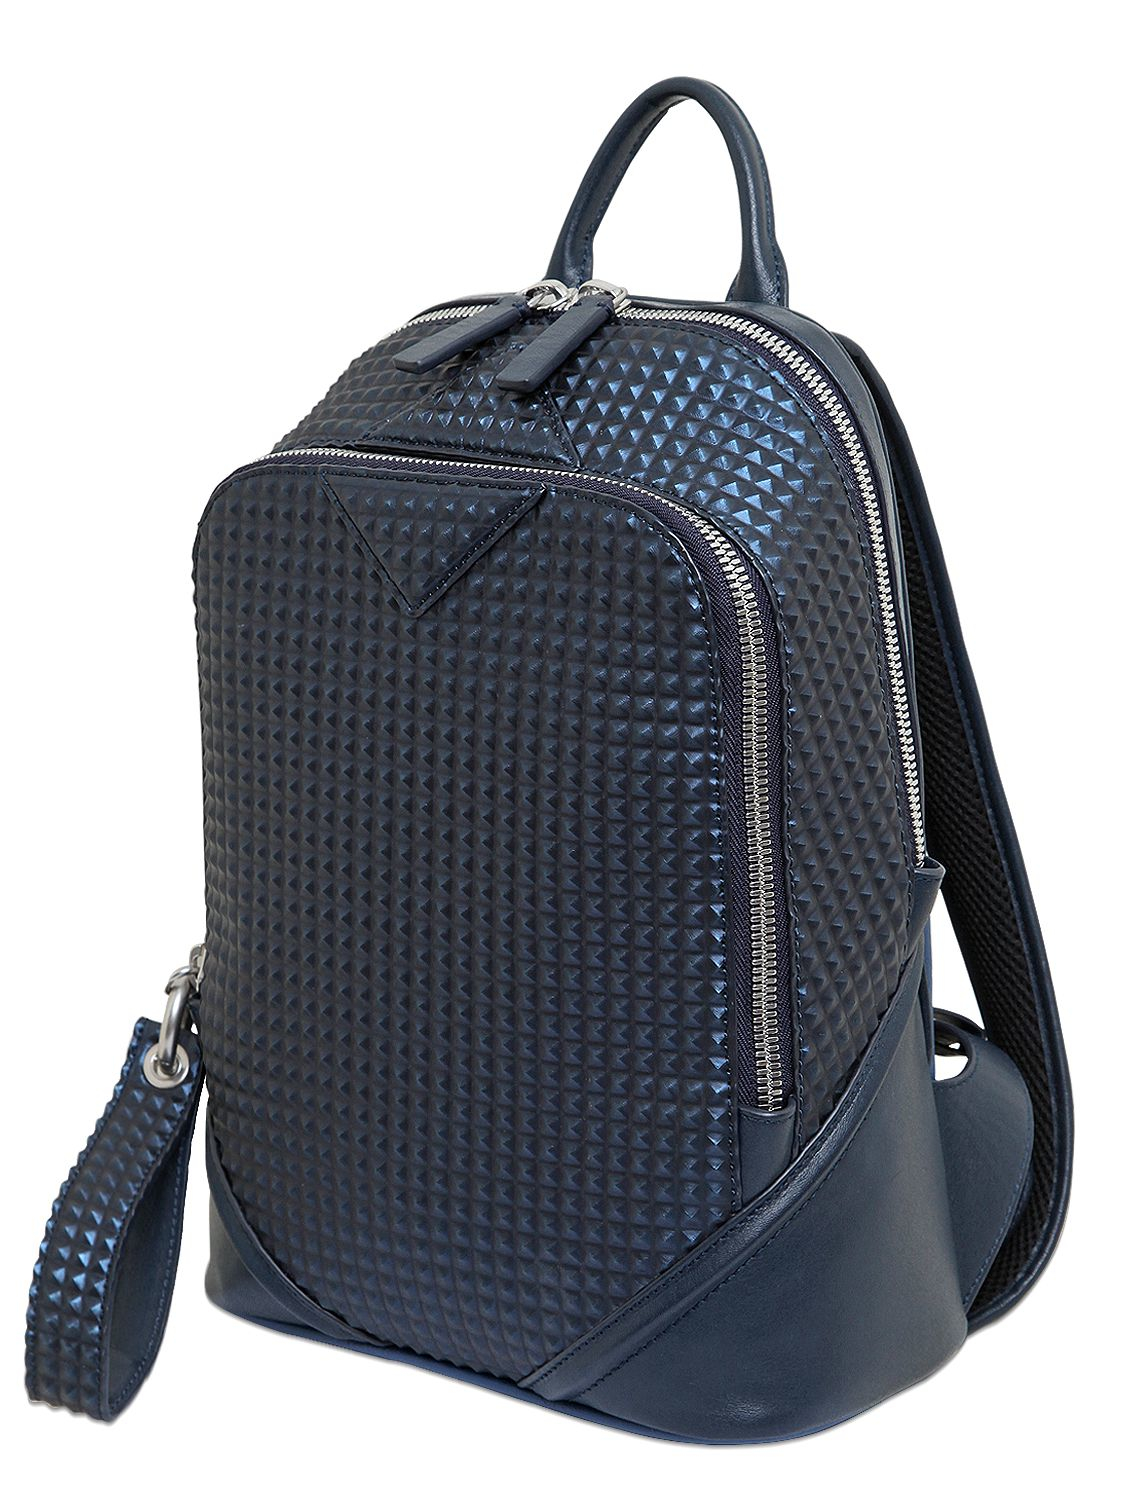 MCM Small Duke Stud Embossed Backpack in Blue/Black (Blue) for Men - Lyst